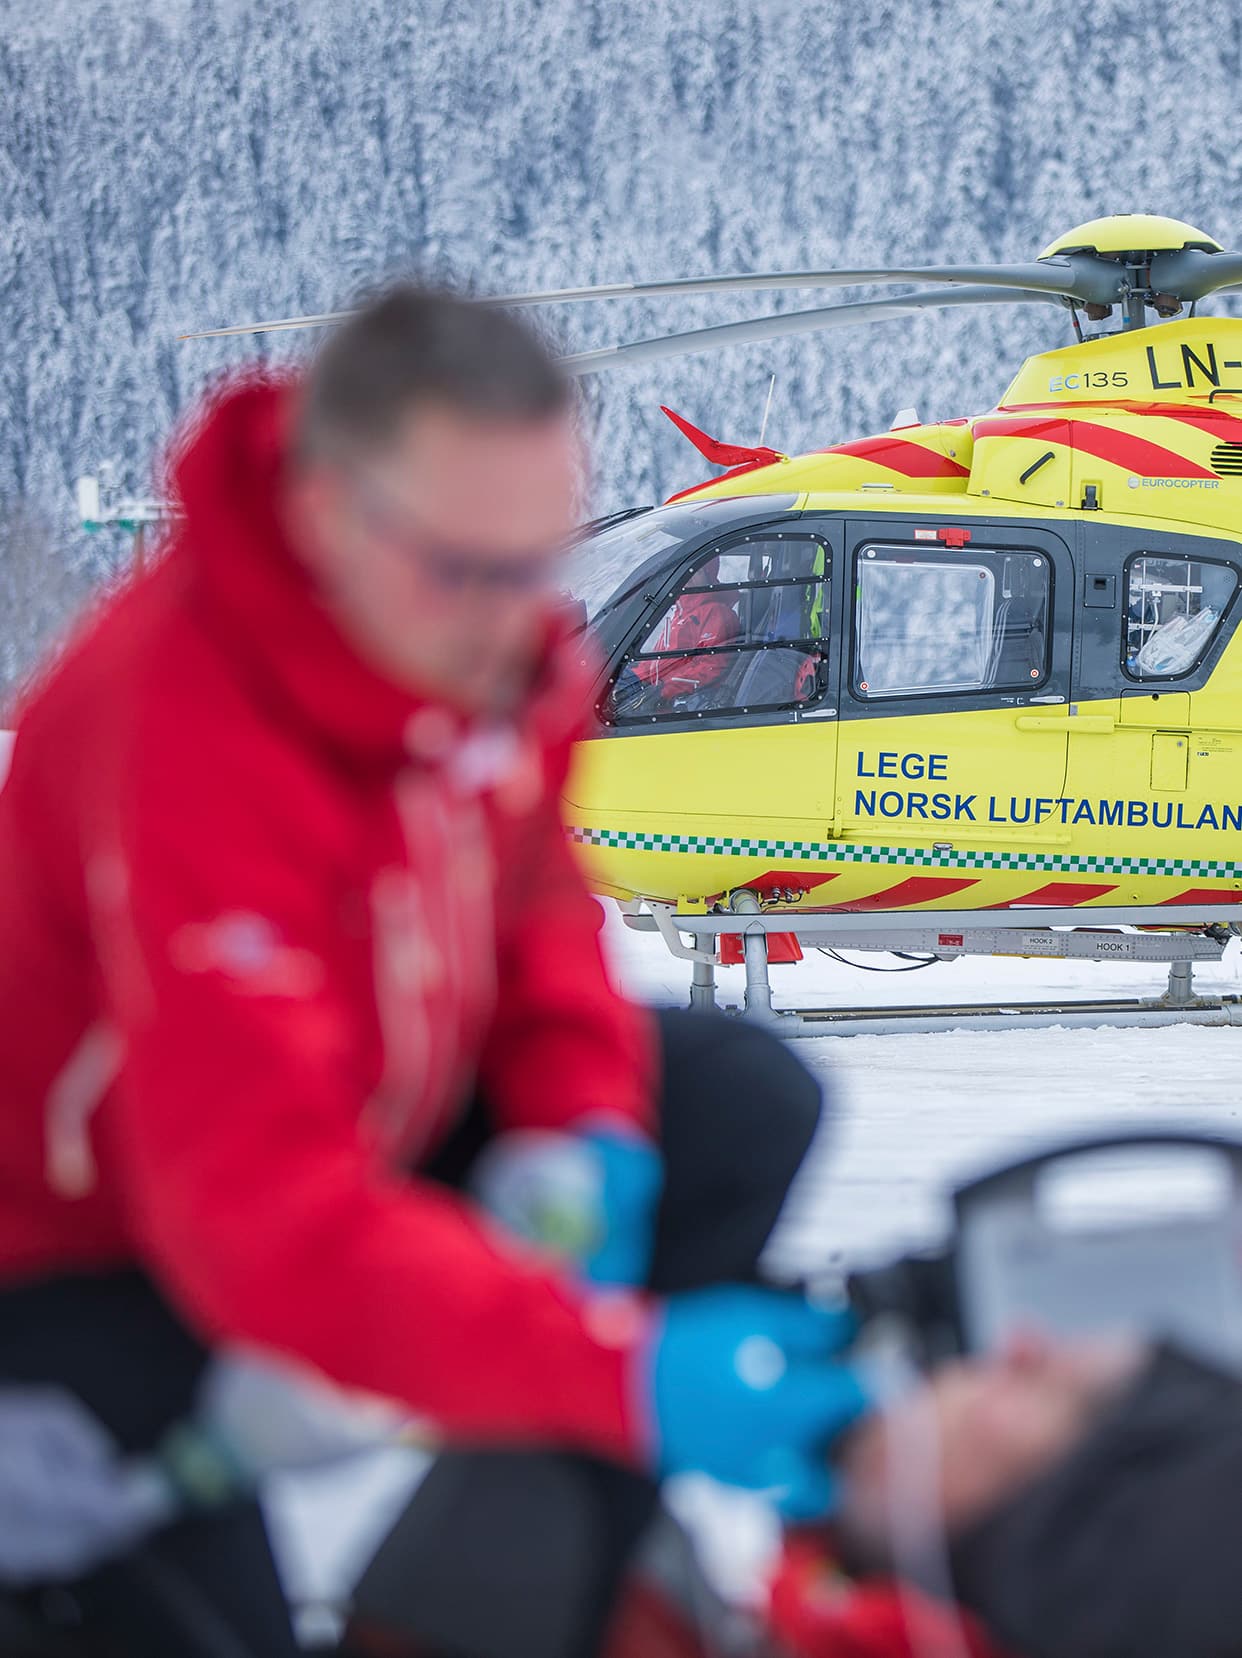 Luftambulanselege jobber med pasient på øvelse, legehelikopteret i bakgrunnen.